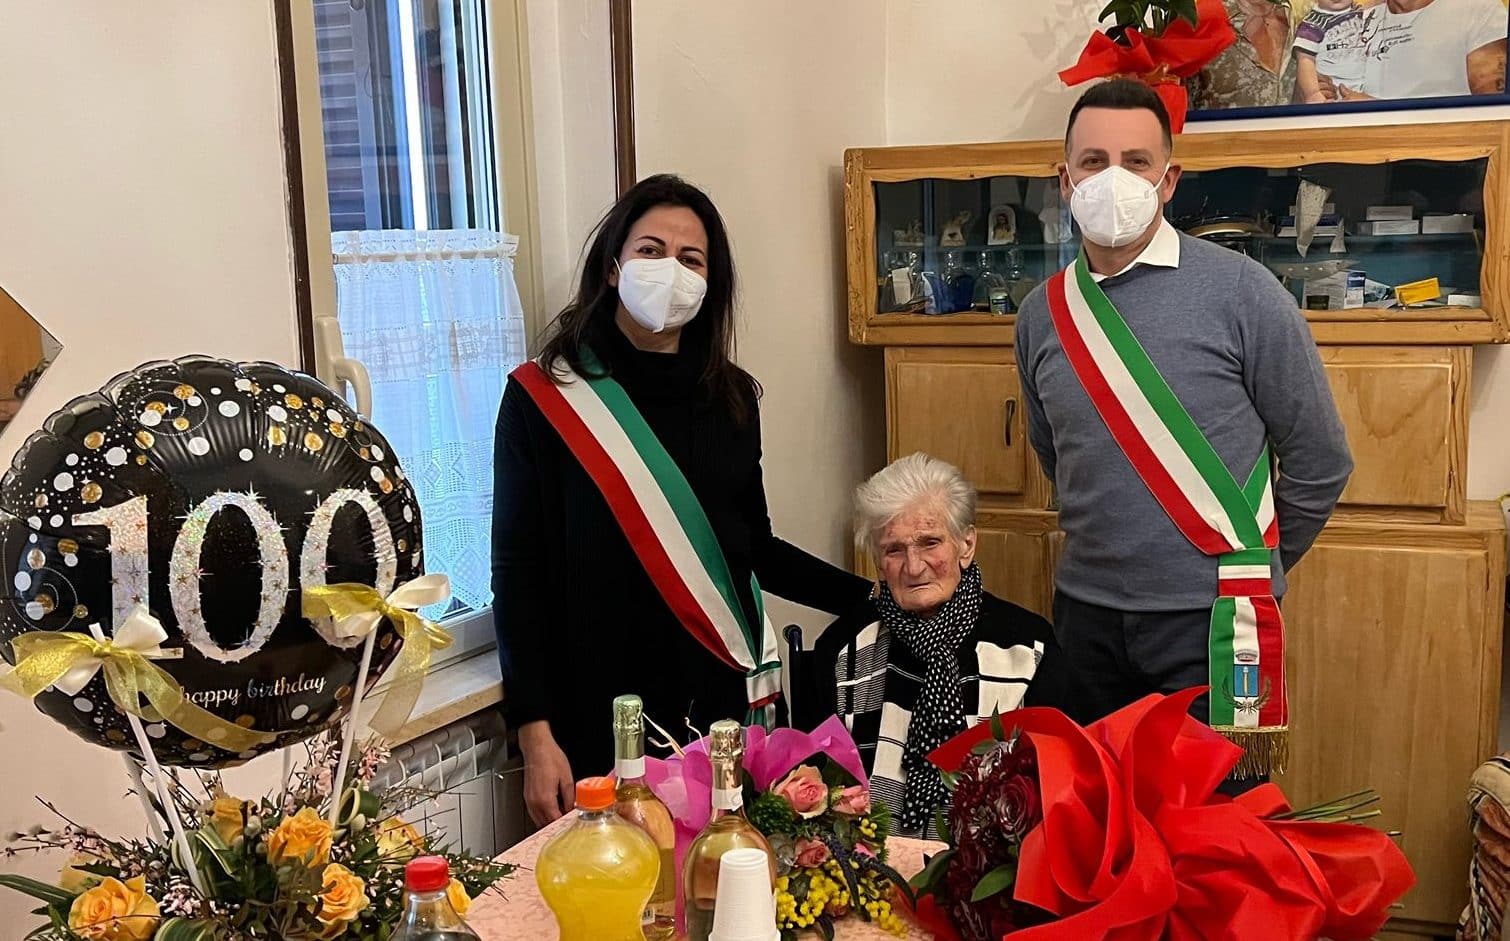 Nonna Annunziata compie 100 anni, gli auguri dei sindaci di Civita D'Antino e Civitella Roveto